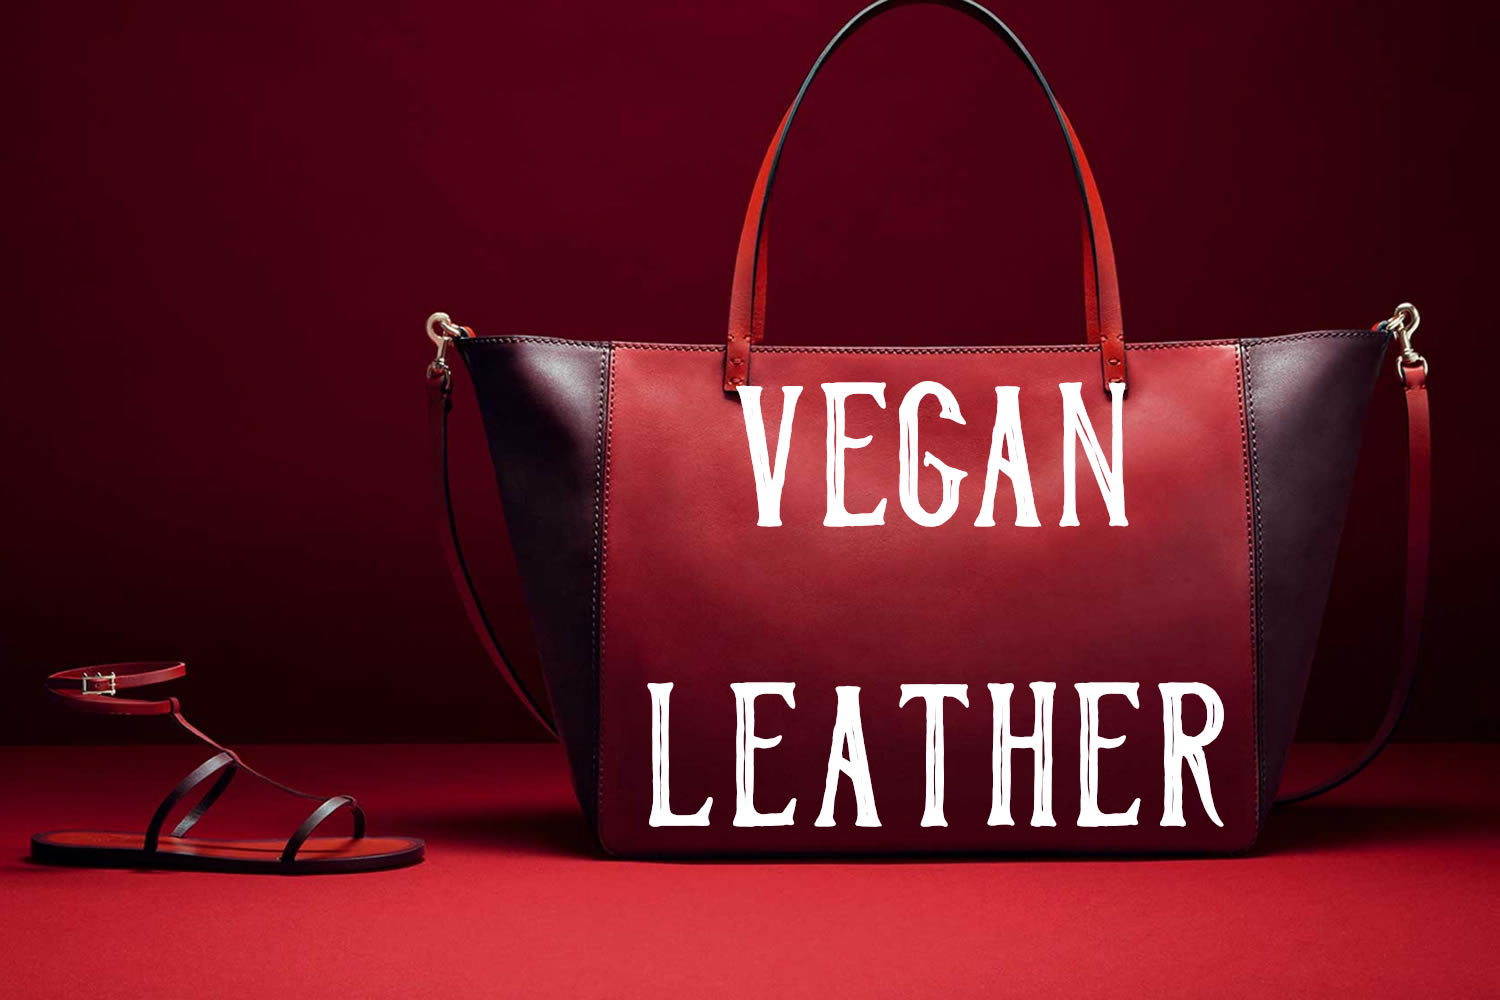 is leather vegan